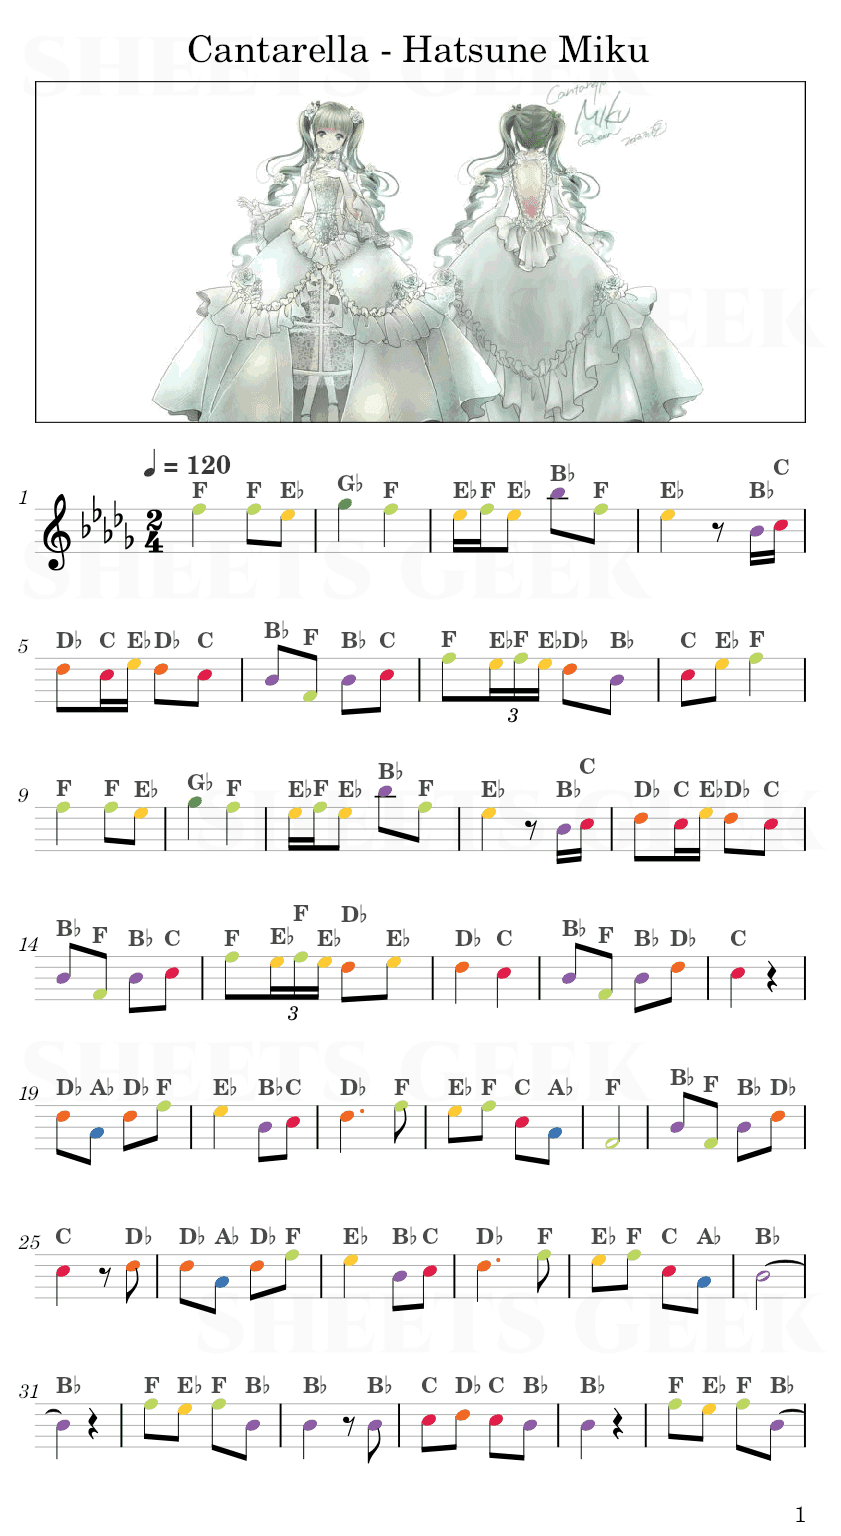 Cantarella - Hatsune Miku Easy Sheet Music Free for piano, keyboard, flute, violin, sax, cello page 1